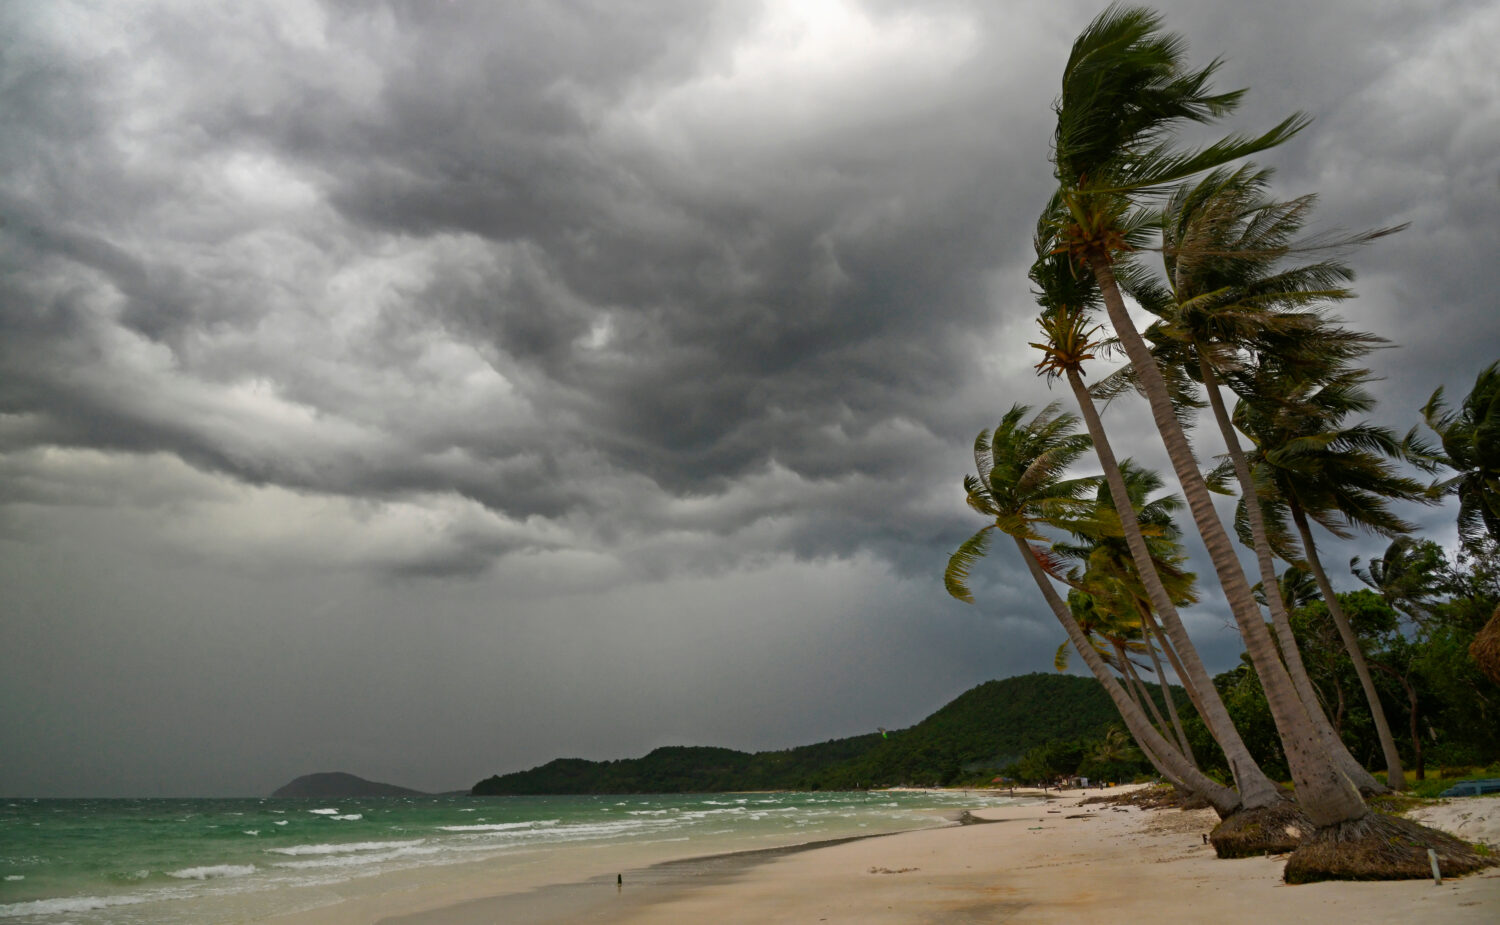 Palma all'uragano.  Spiaggia della stella, isola di Phu Quoc, Vietnam